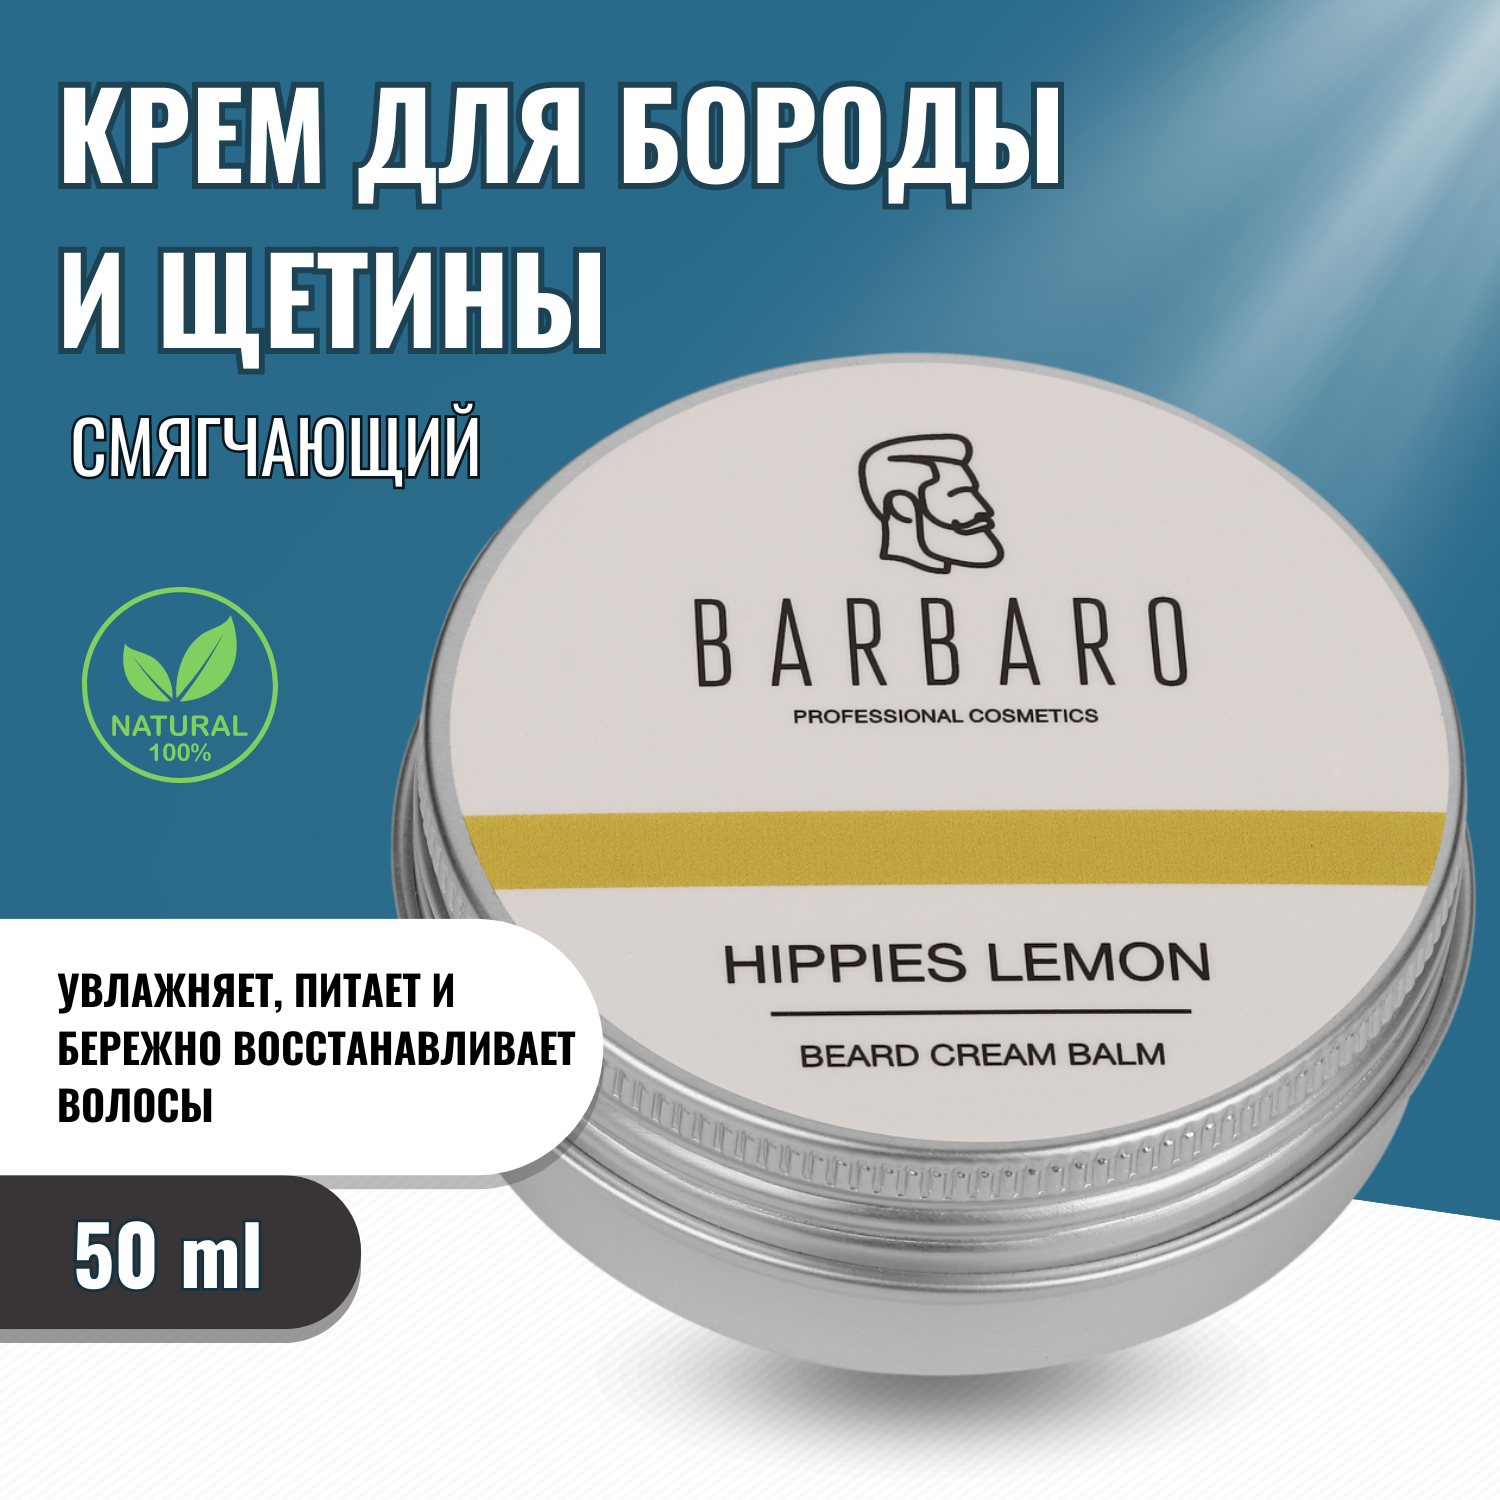 Кремовый бальзам для бороды Barbaro "Hippies lemon", 50 гр.